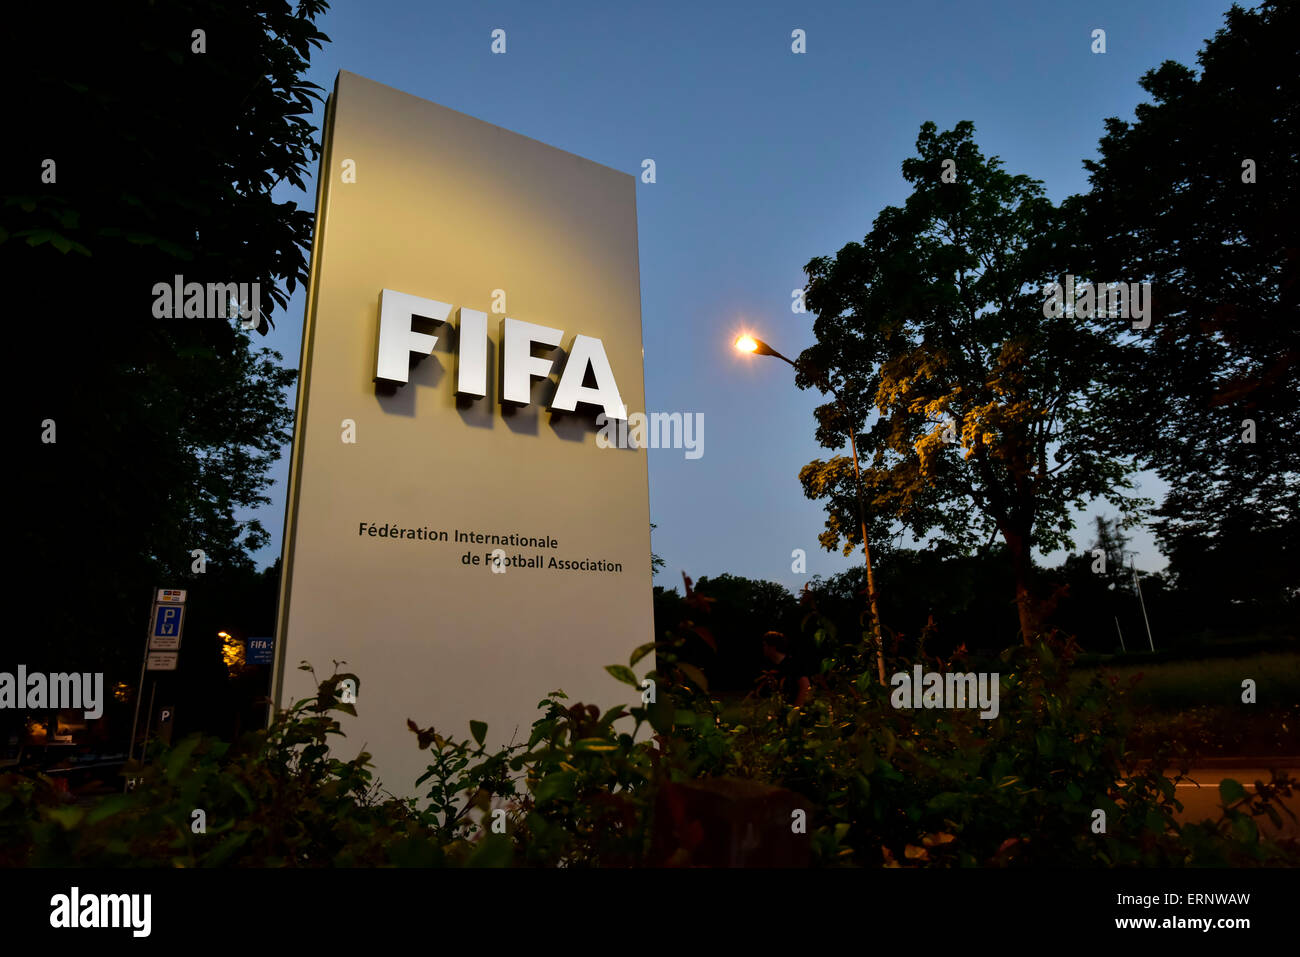 Panneau d'entrée au siège de la FIFA à Zurich, pris dans la nuit, Sepp Blatter a annoncé sa démission en tant que président de la FIFA. Banque D'Images